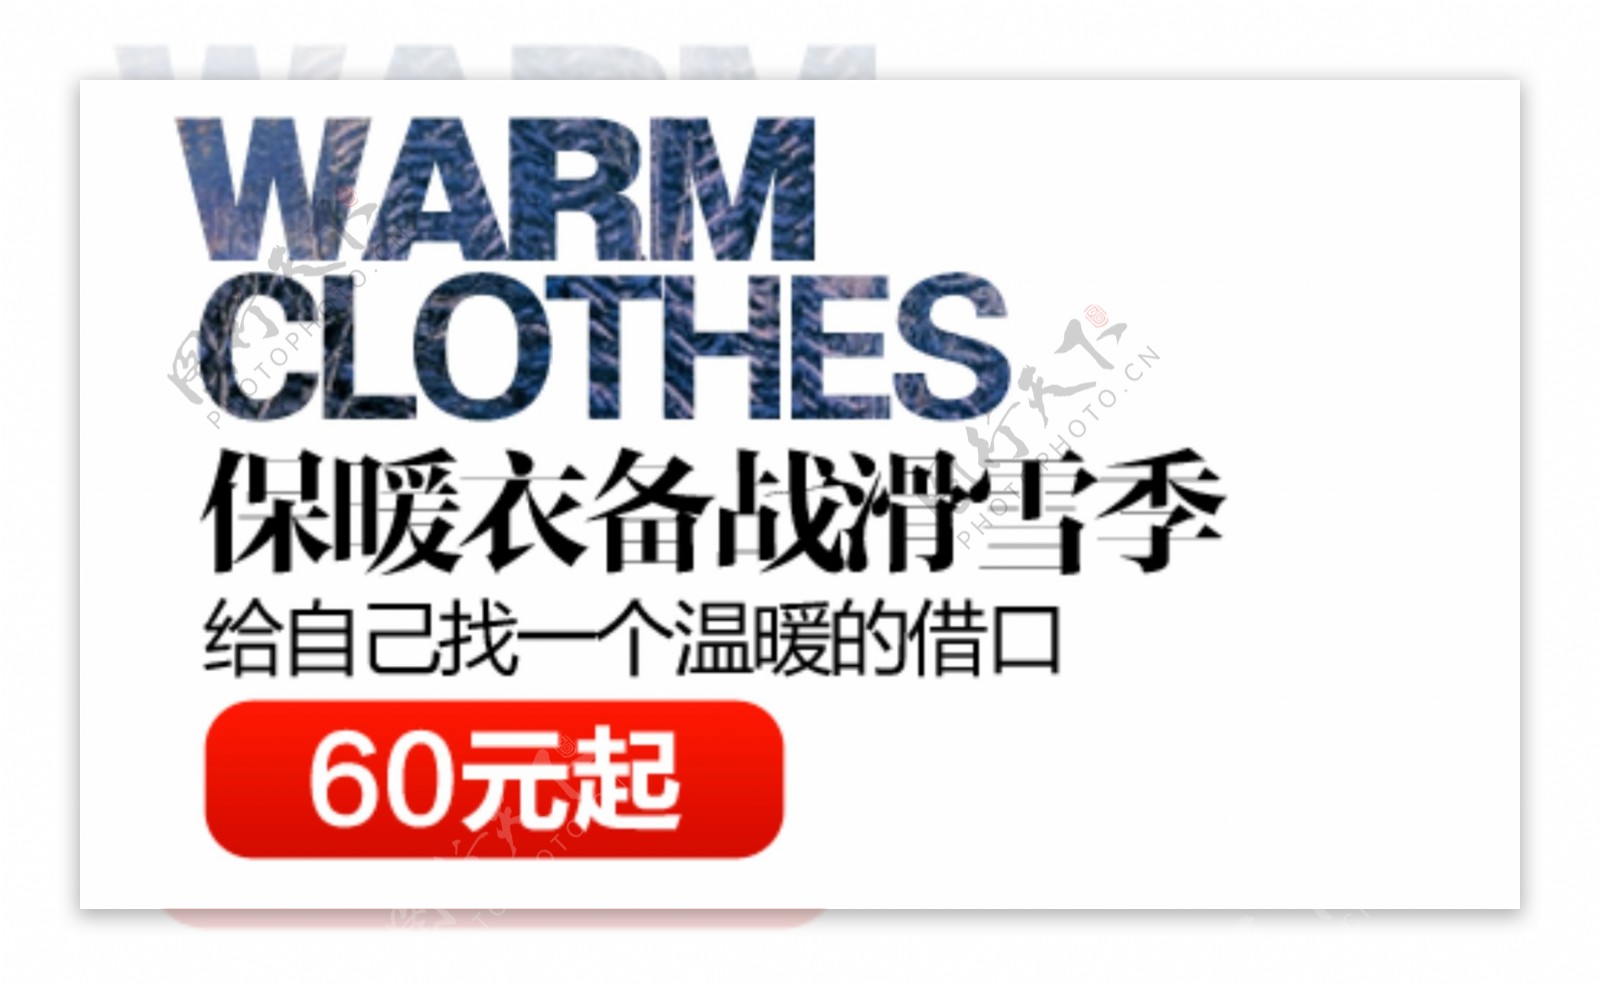 保暖衣促销文字设计